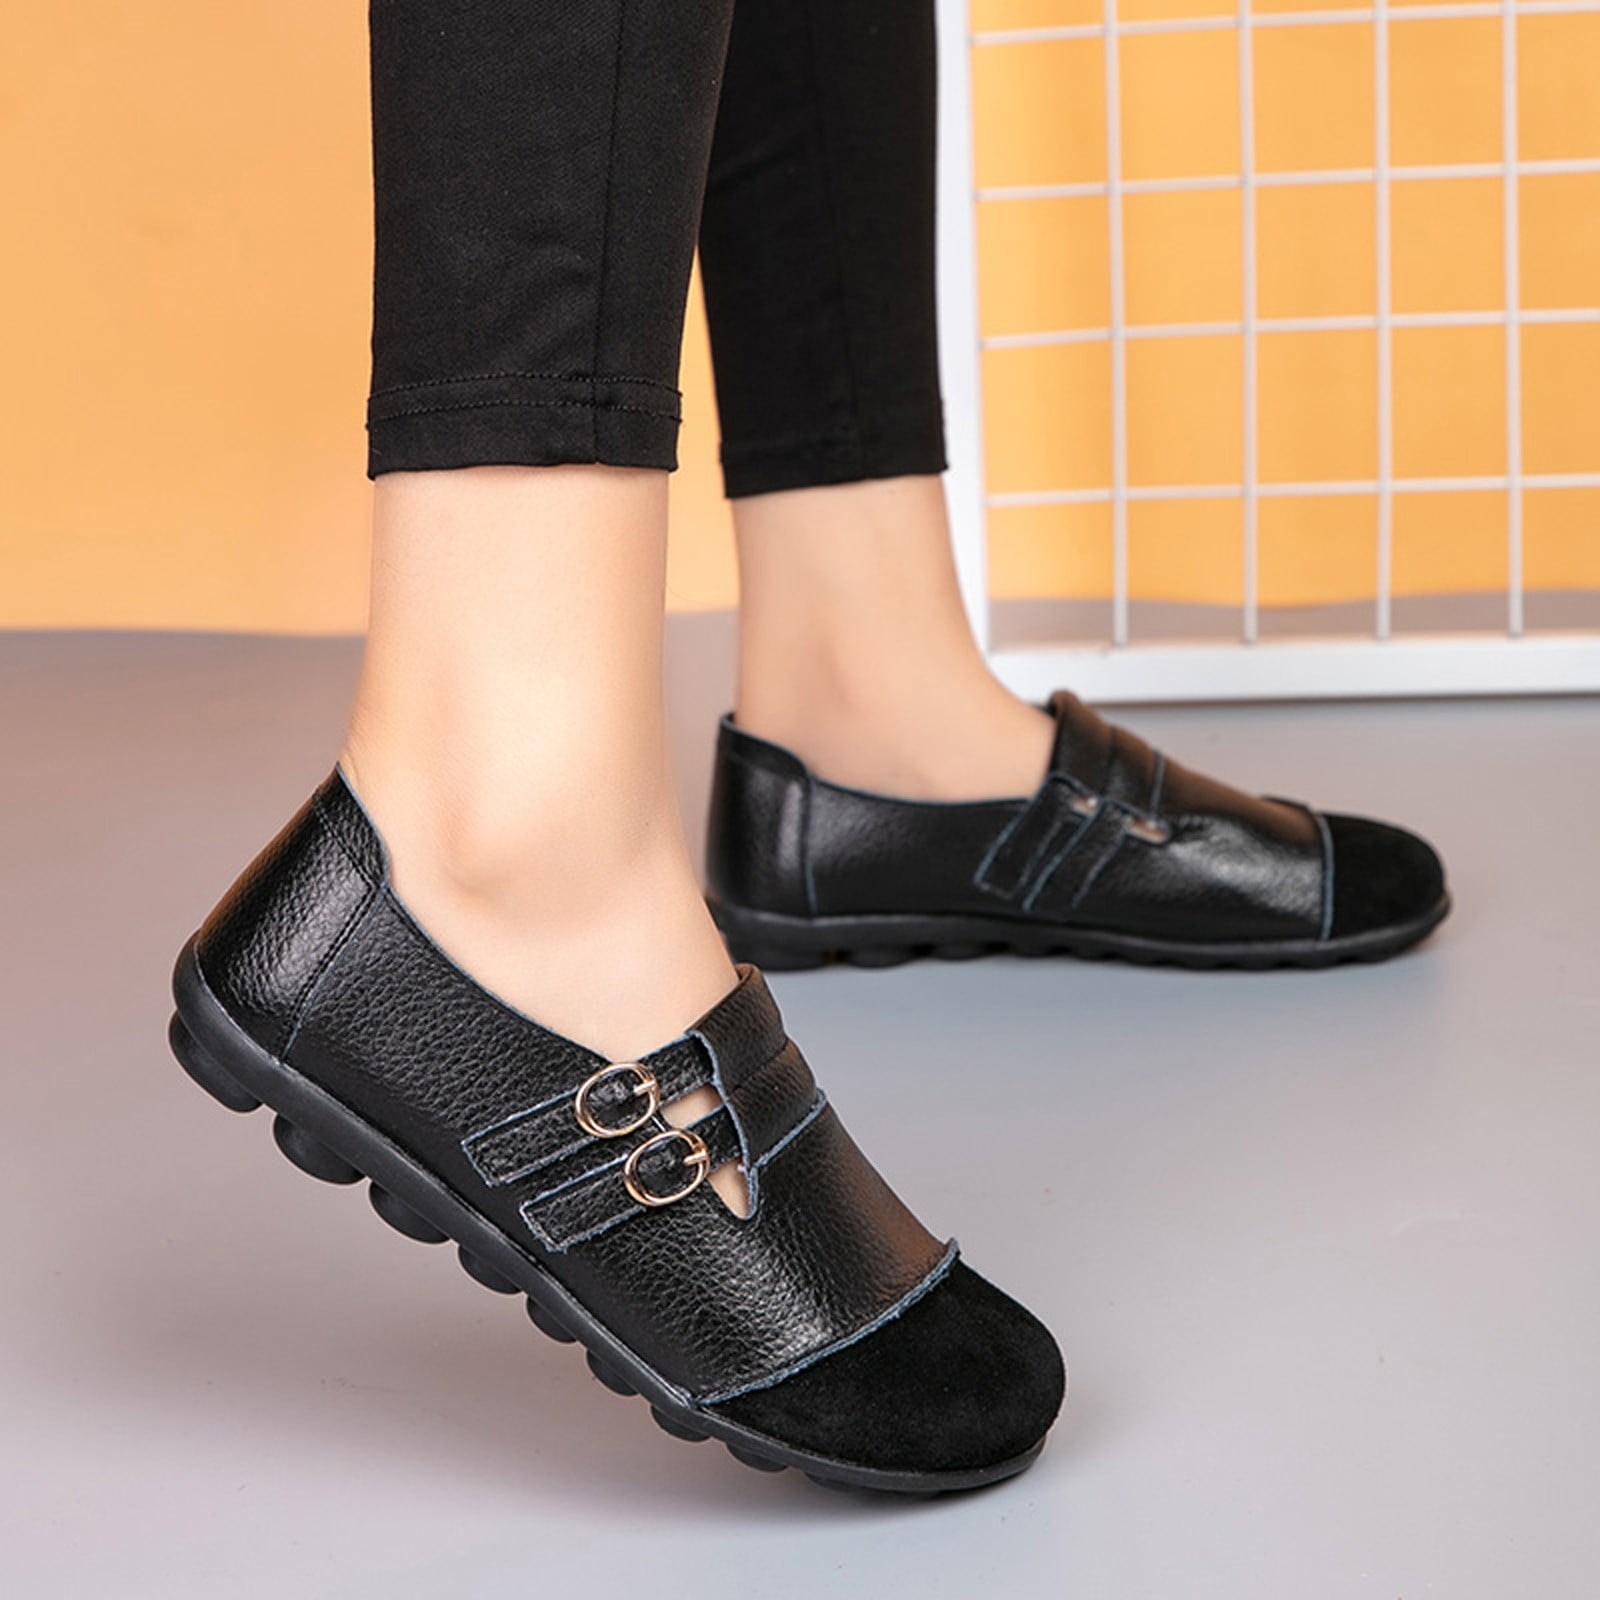 Axxd Women's Flexible Comfy Flats Shoes